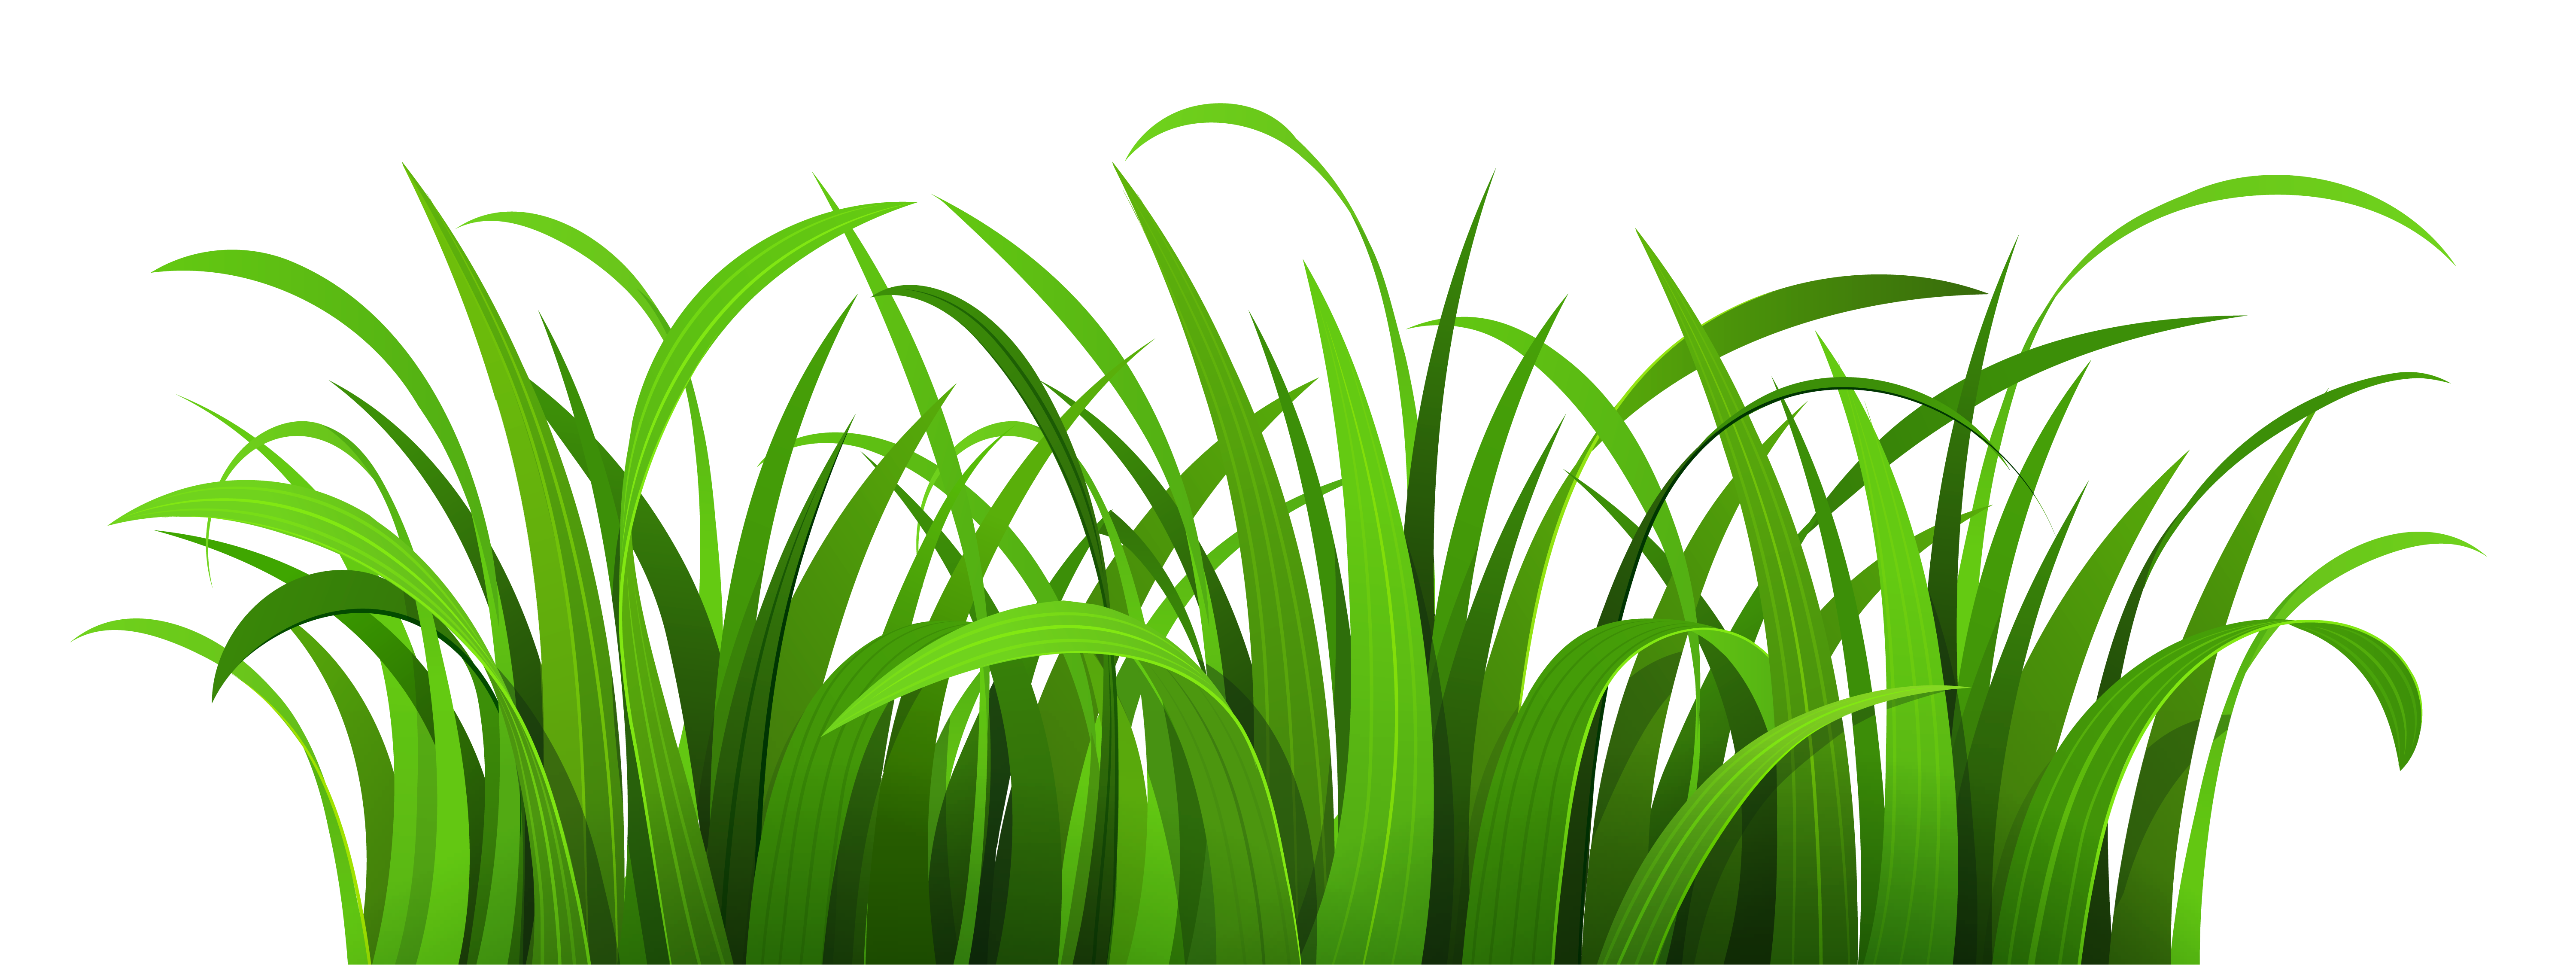 Flower grass image clip art